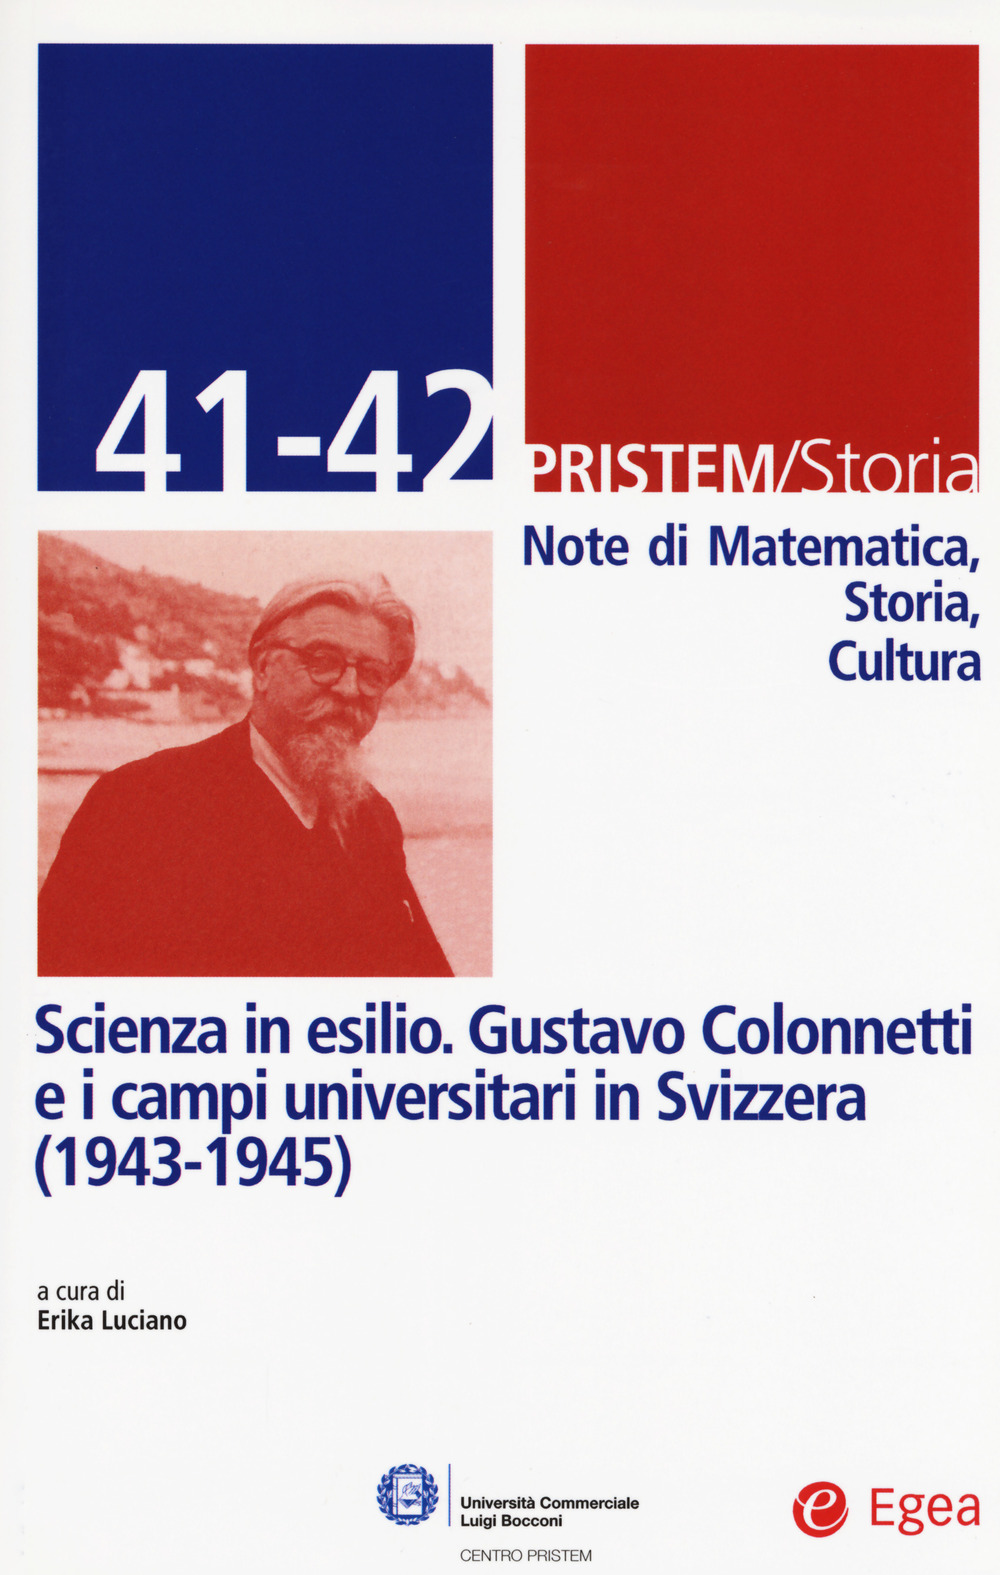 Image of Pristem storia. Note di matematica, storia, cultura. Vol. 41-42: Scienza in esilio. Gustavo Colonnetti e i campi universitari in Svizzera (1943-1945).